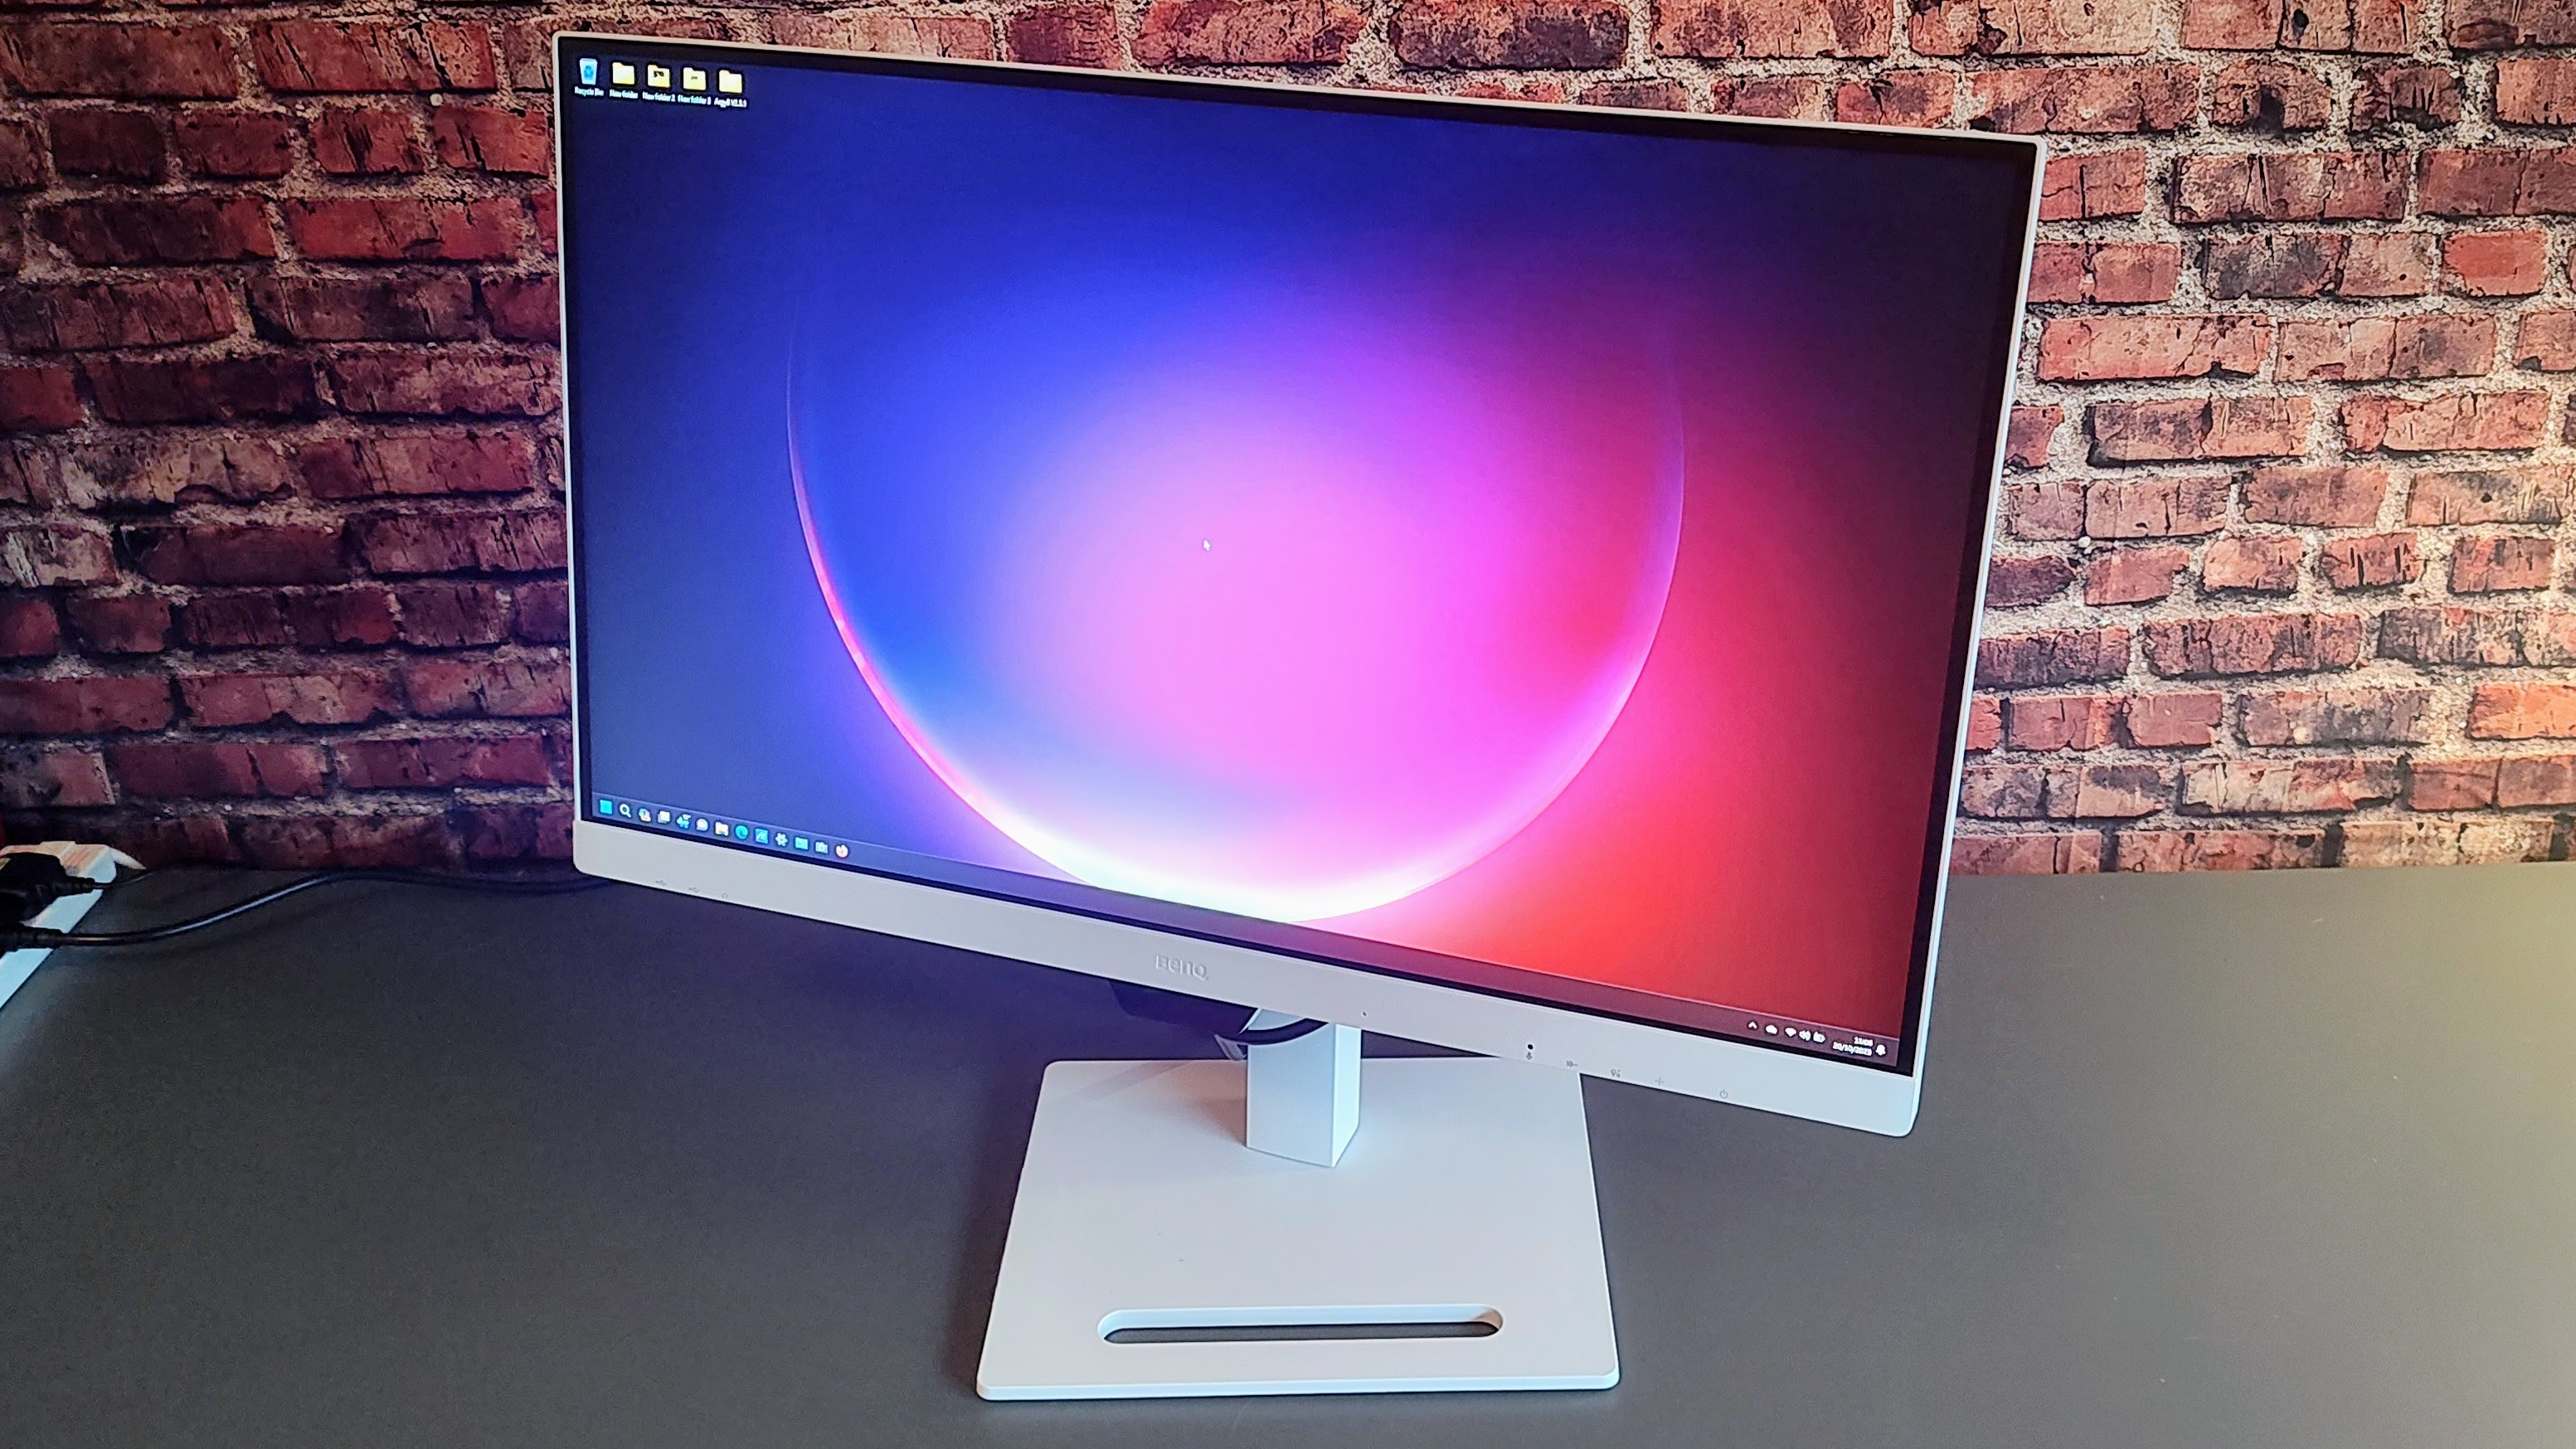 The BenQ GW2790QT monitor on a desk